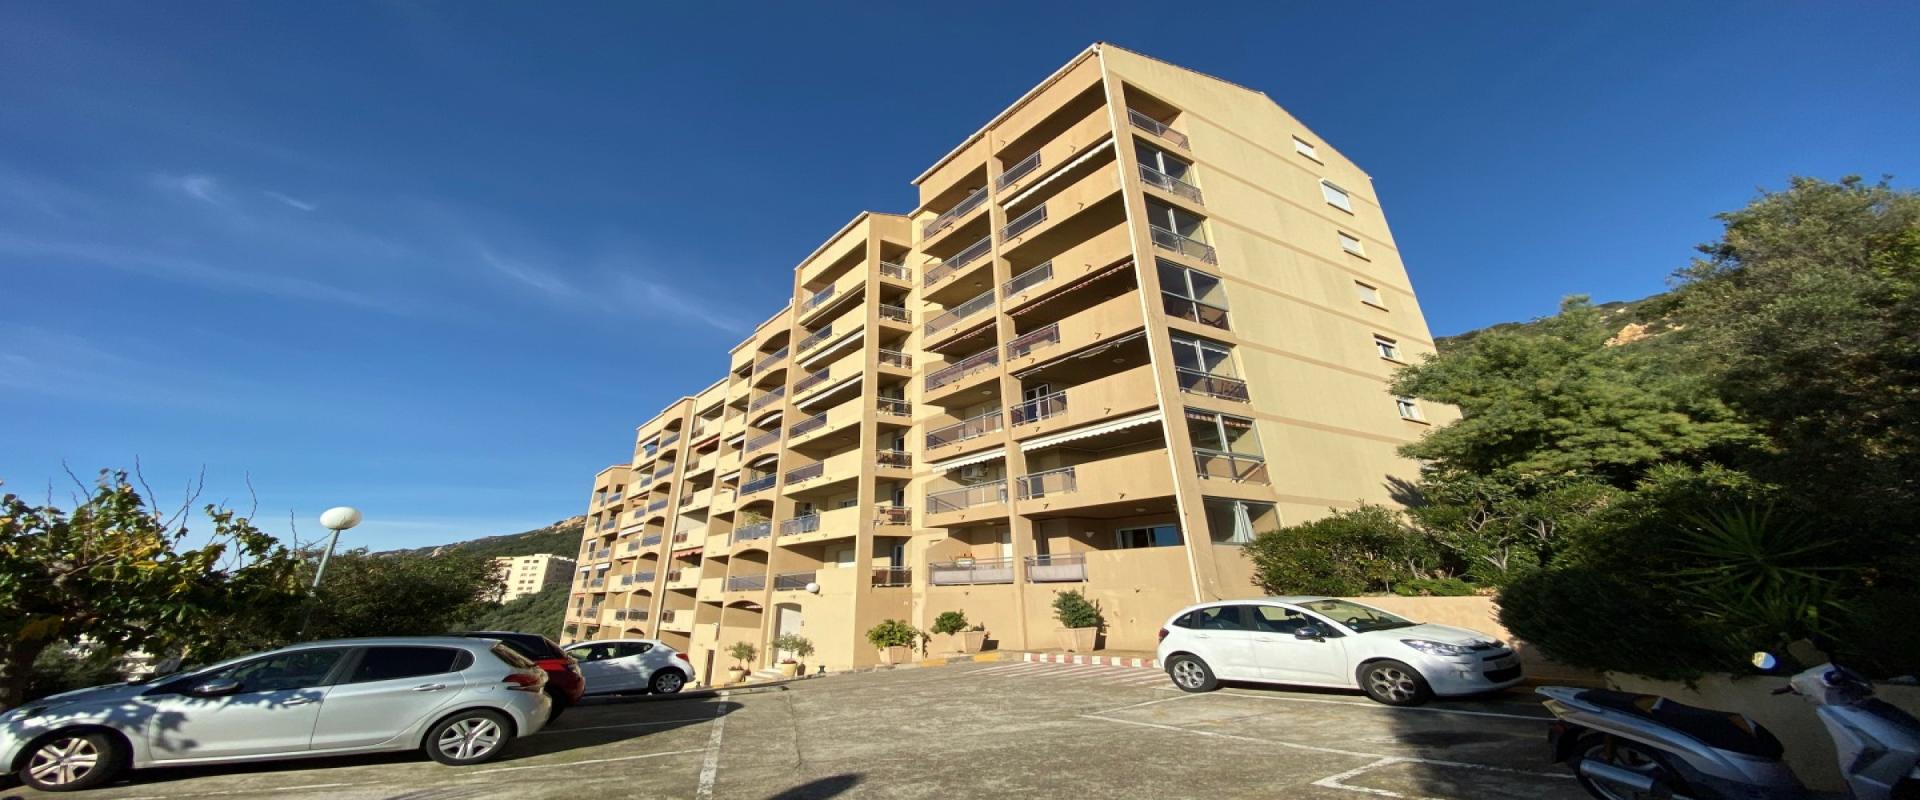 Appartement F4 à vendre avec vue mer secteur Sanguinaires - Ajaccio